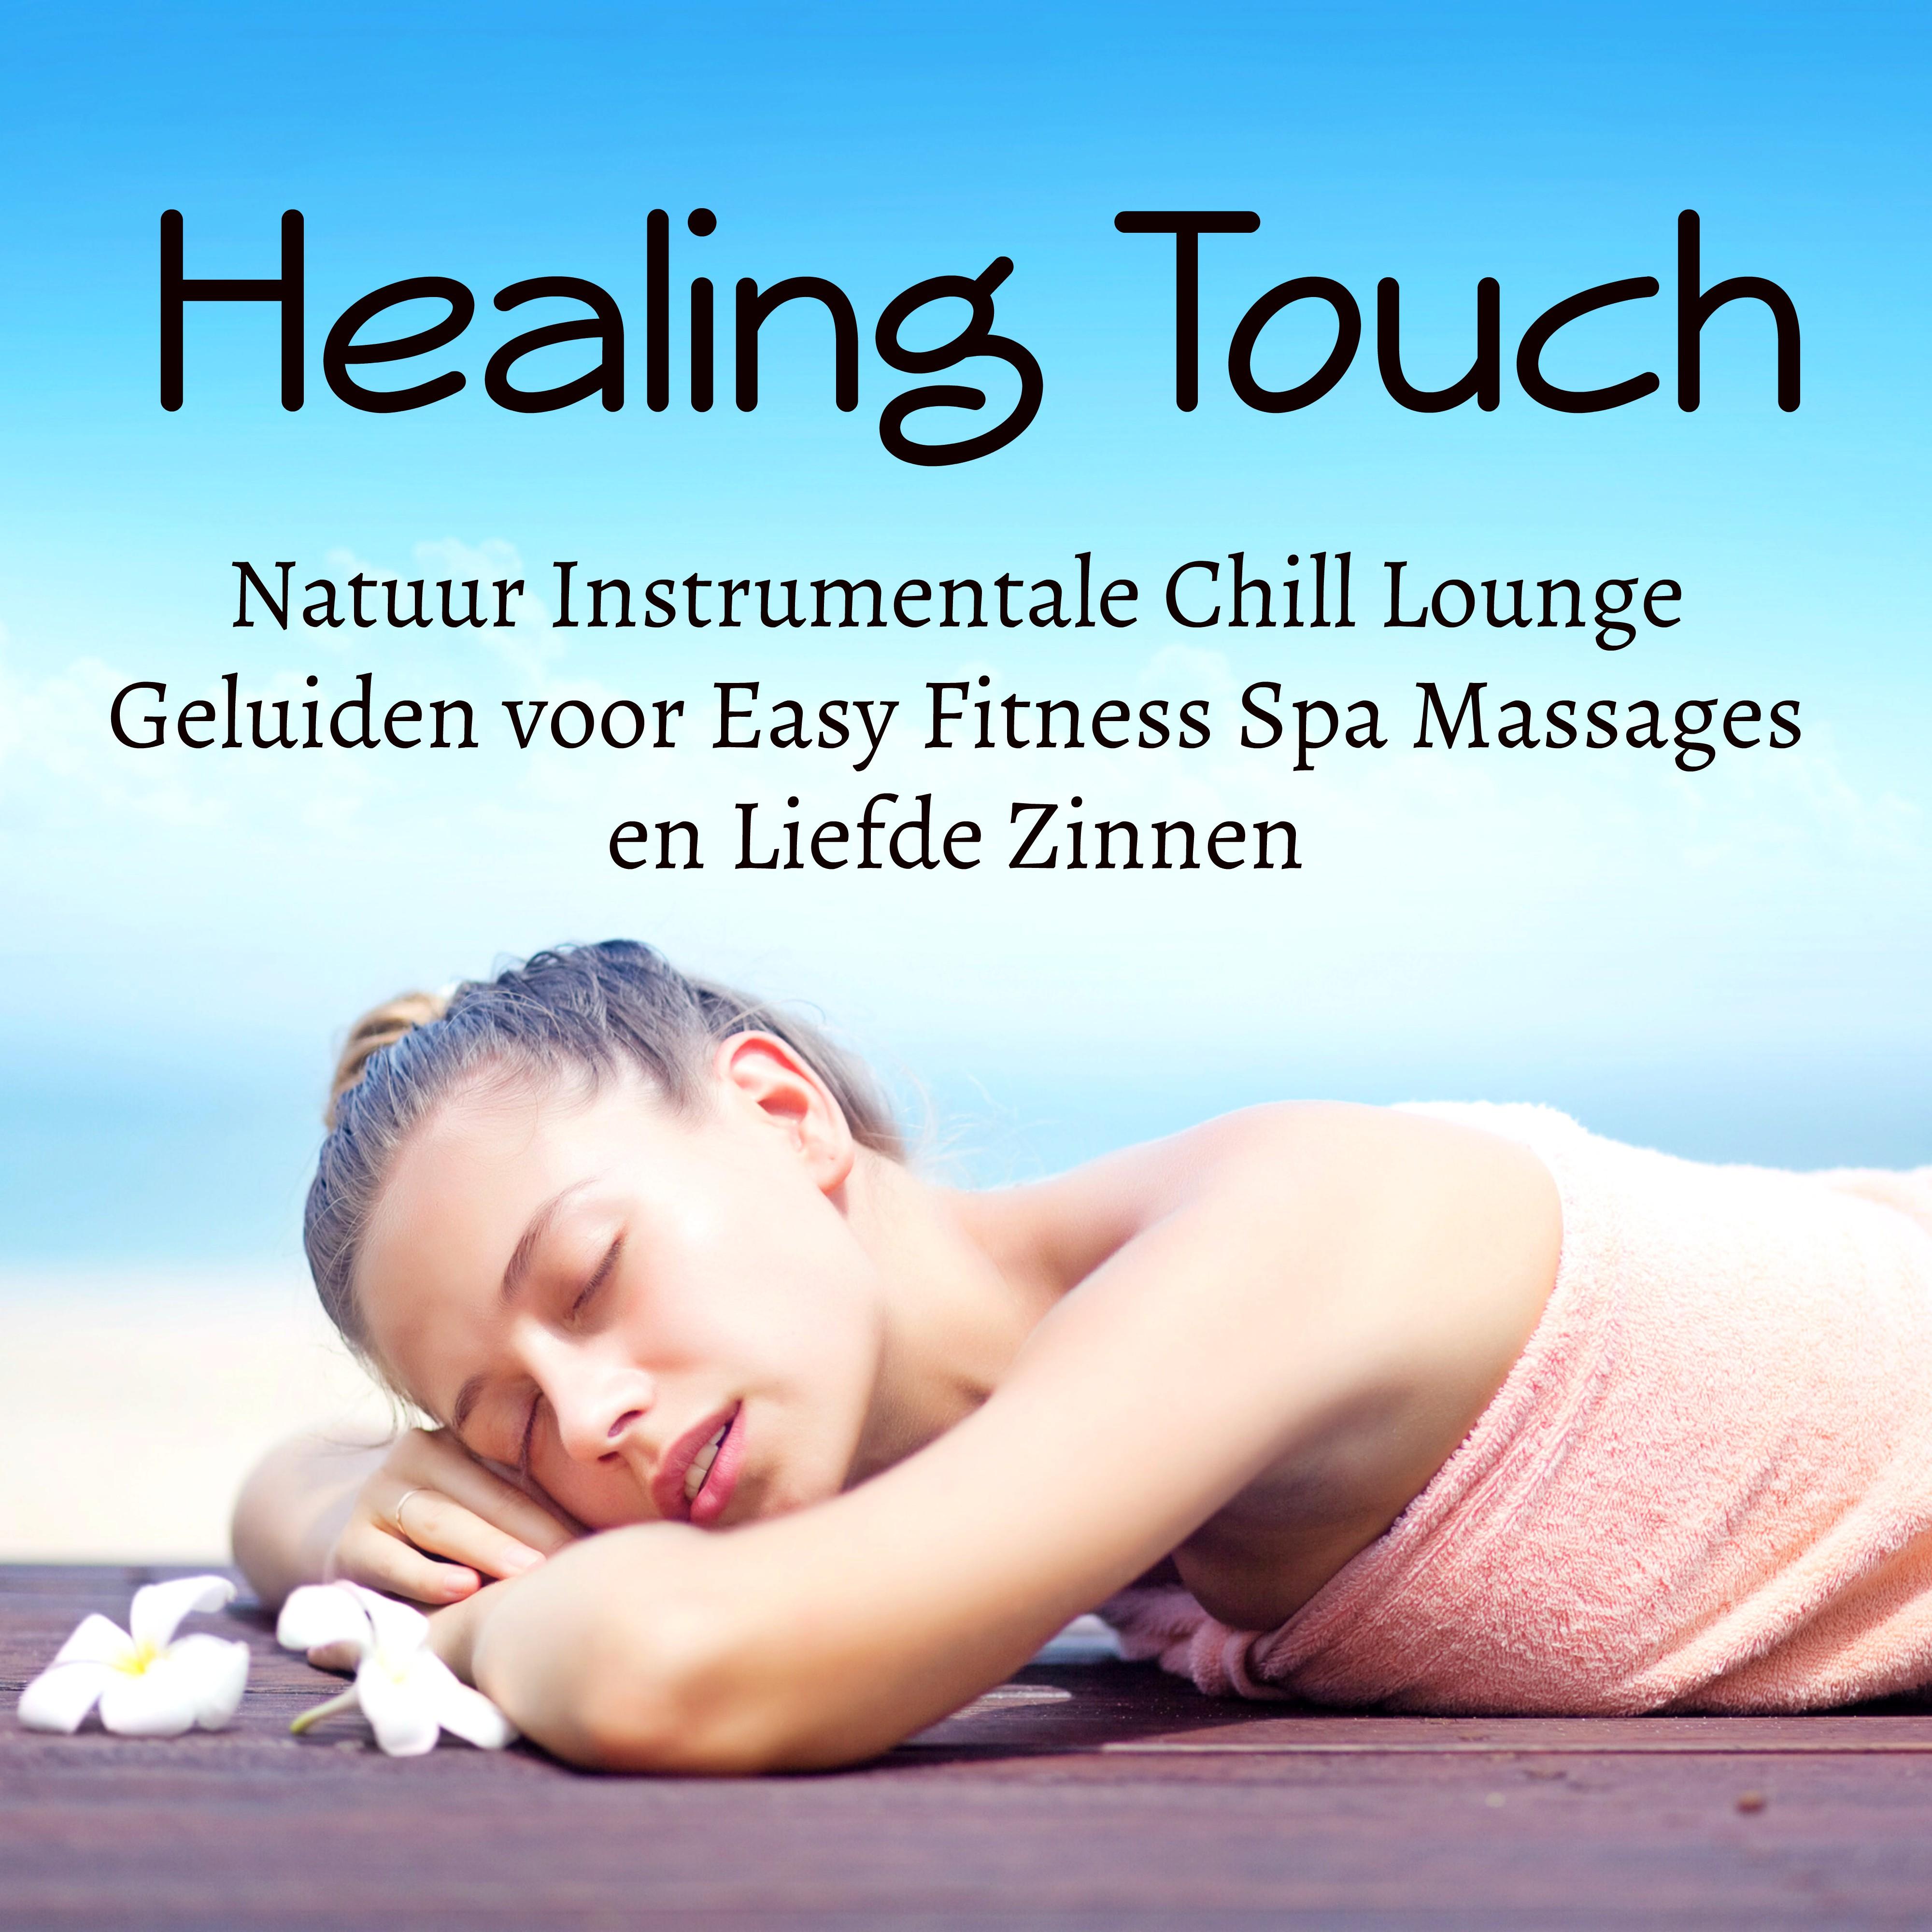 Healing Touch - Natuur Instrumentale Chill Lounge Geluiden voor Easy Fitness Spa Massages en Liefde Zinnen